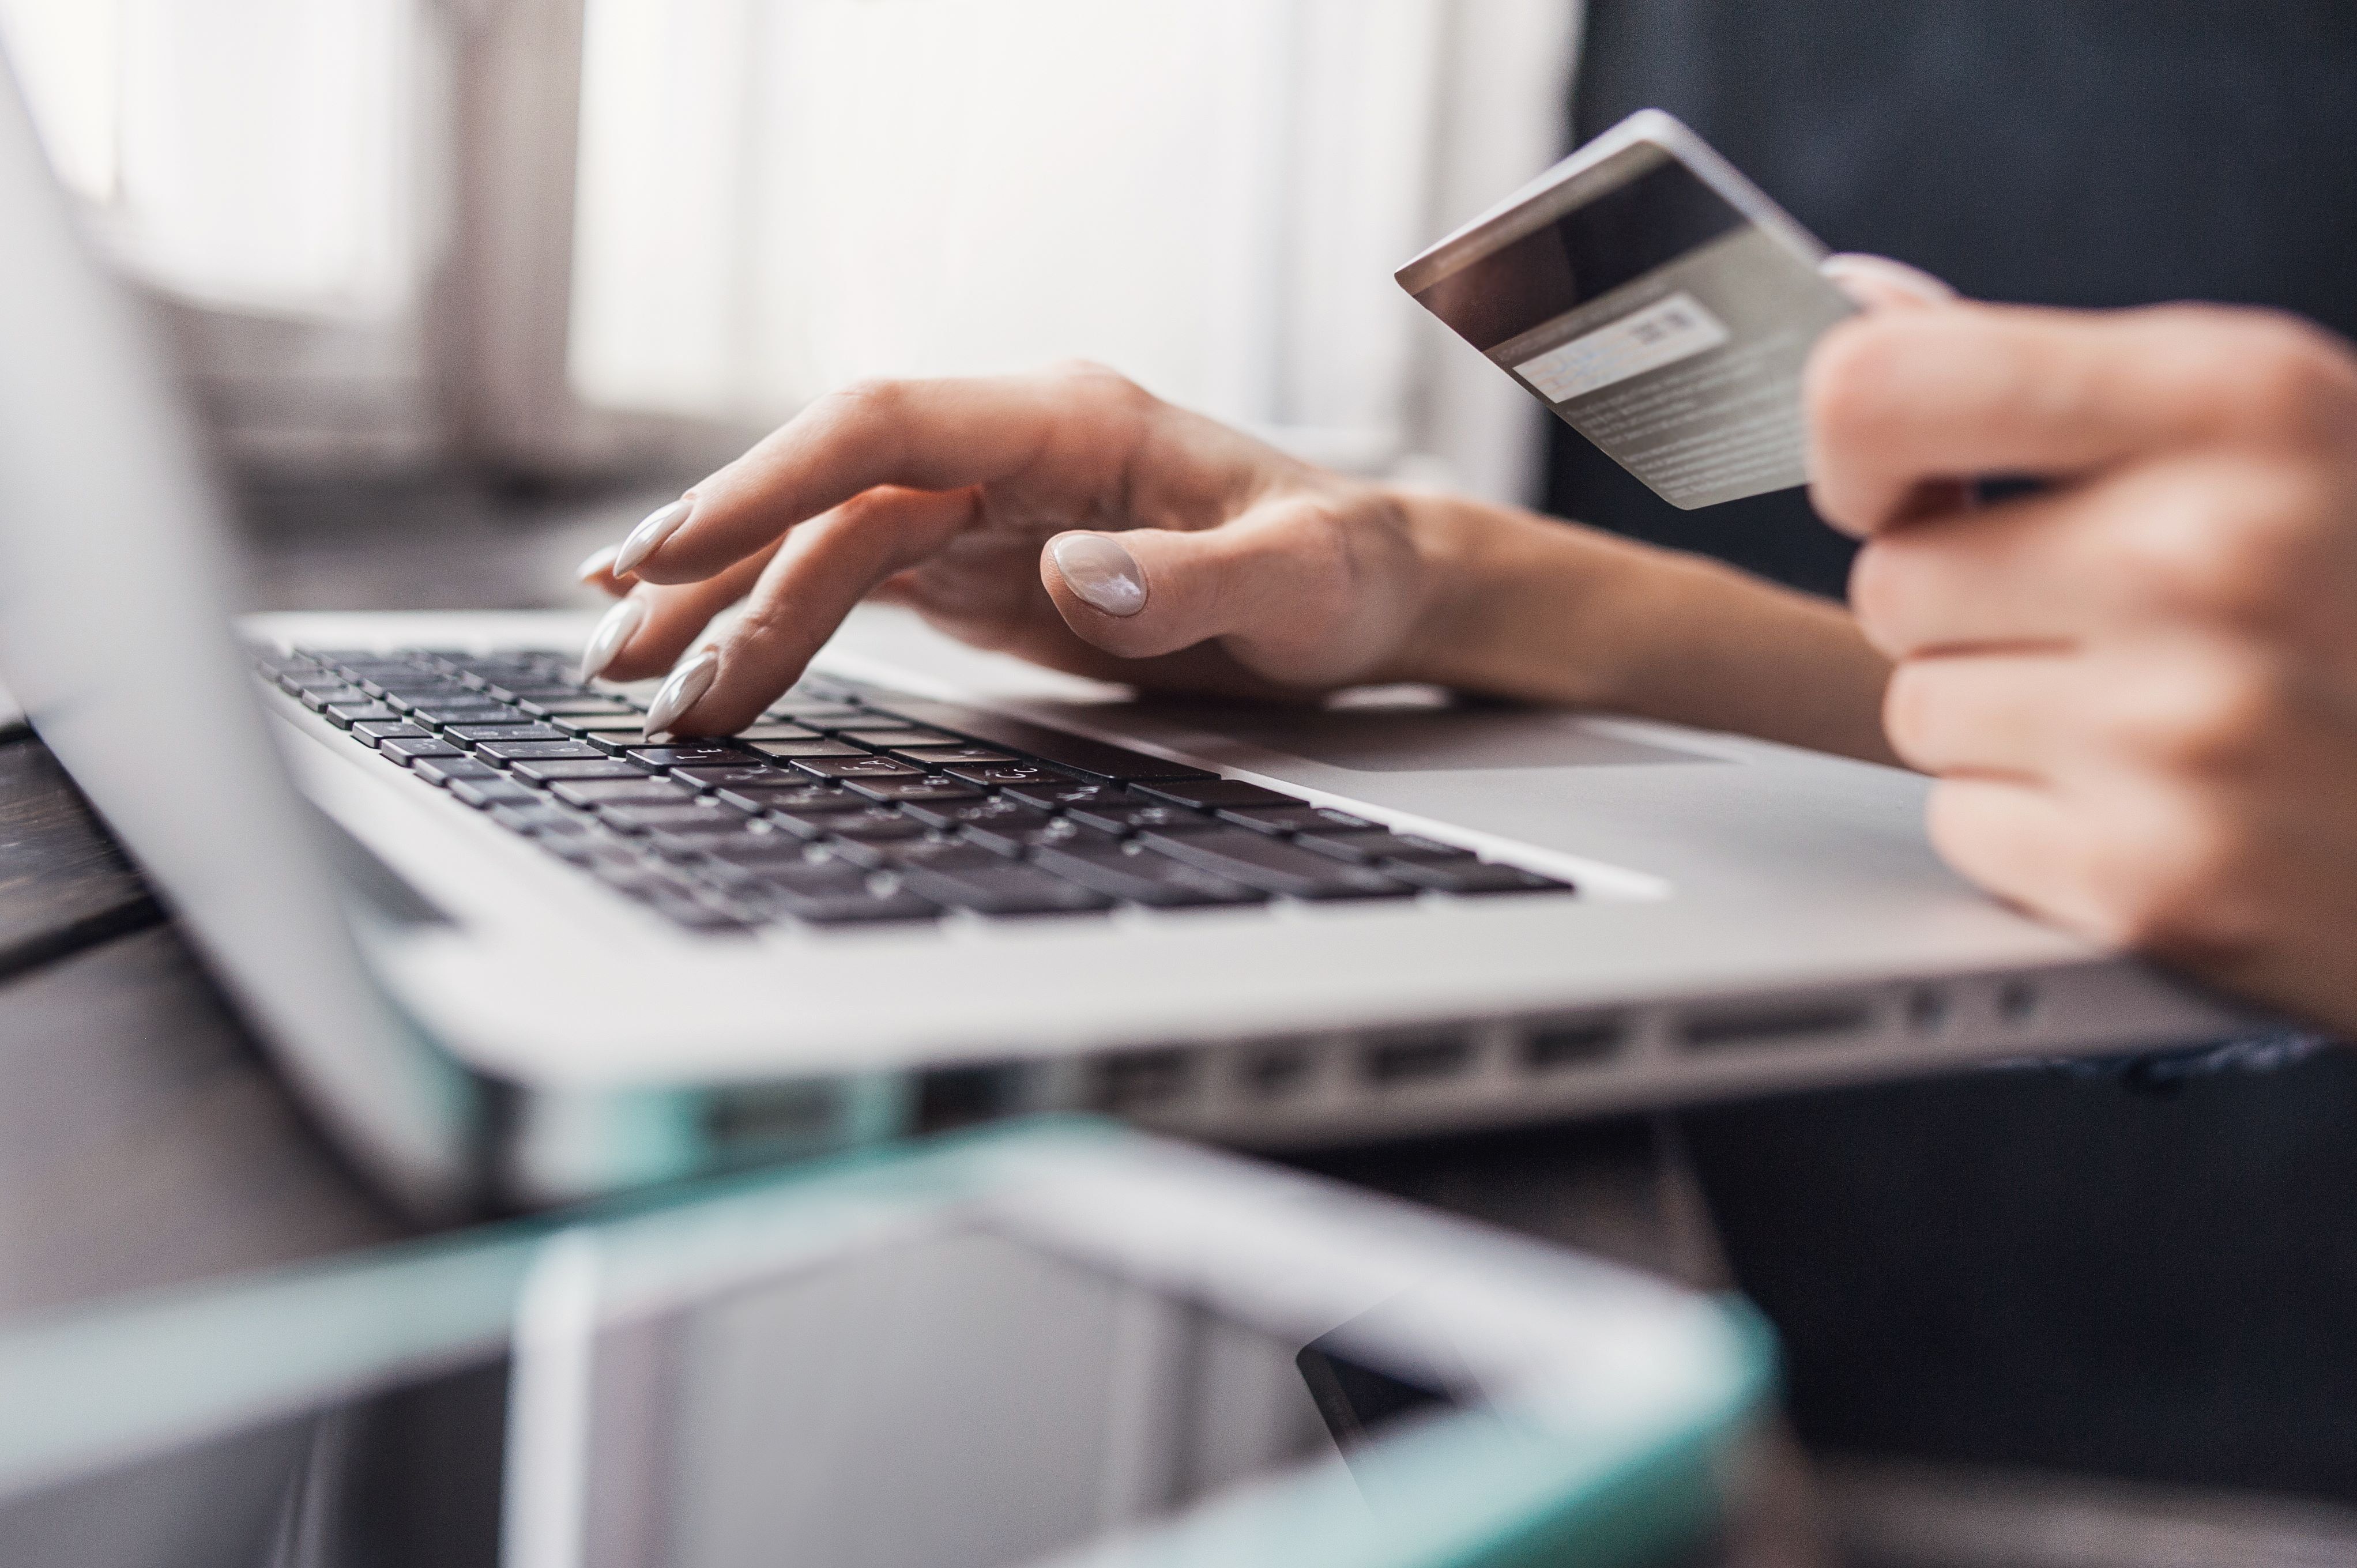 Így védekezhetsz az online átverések ellen vásárláskor